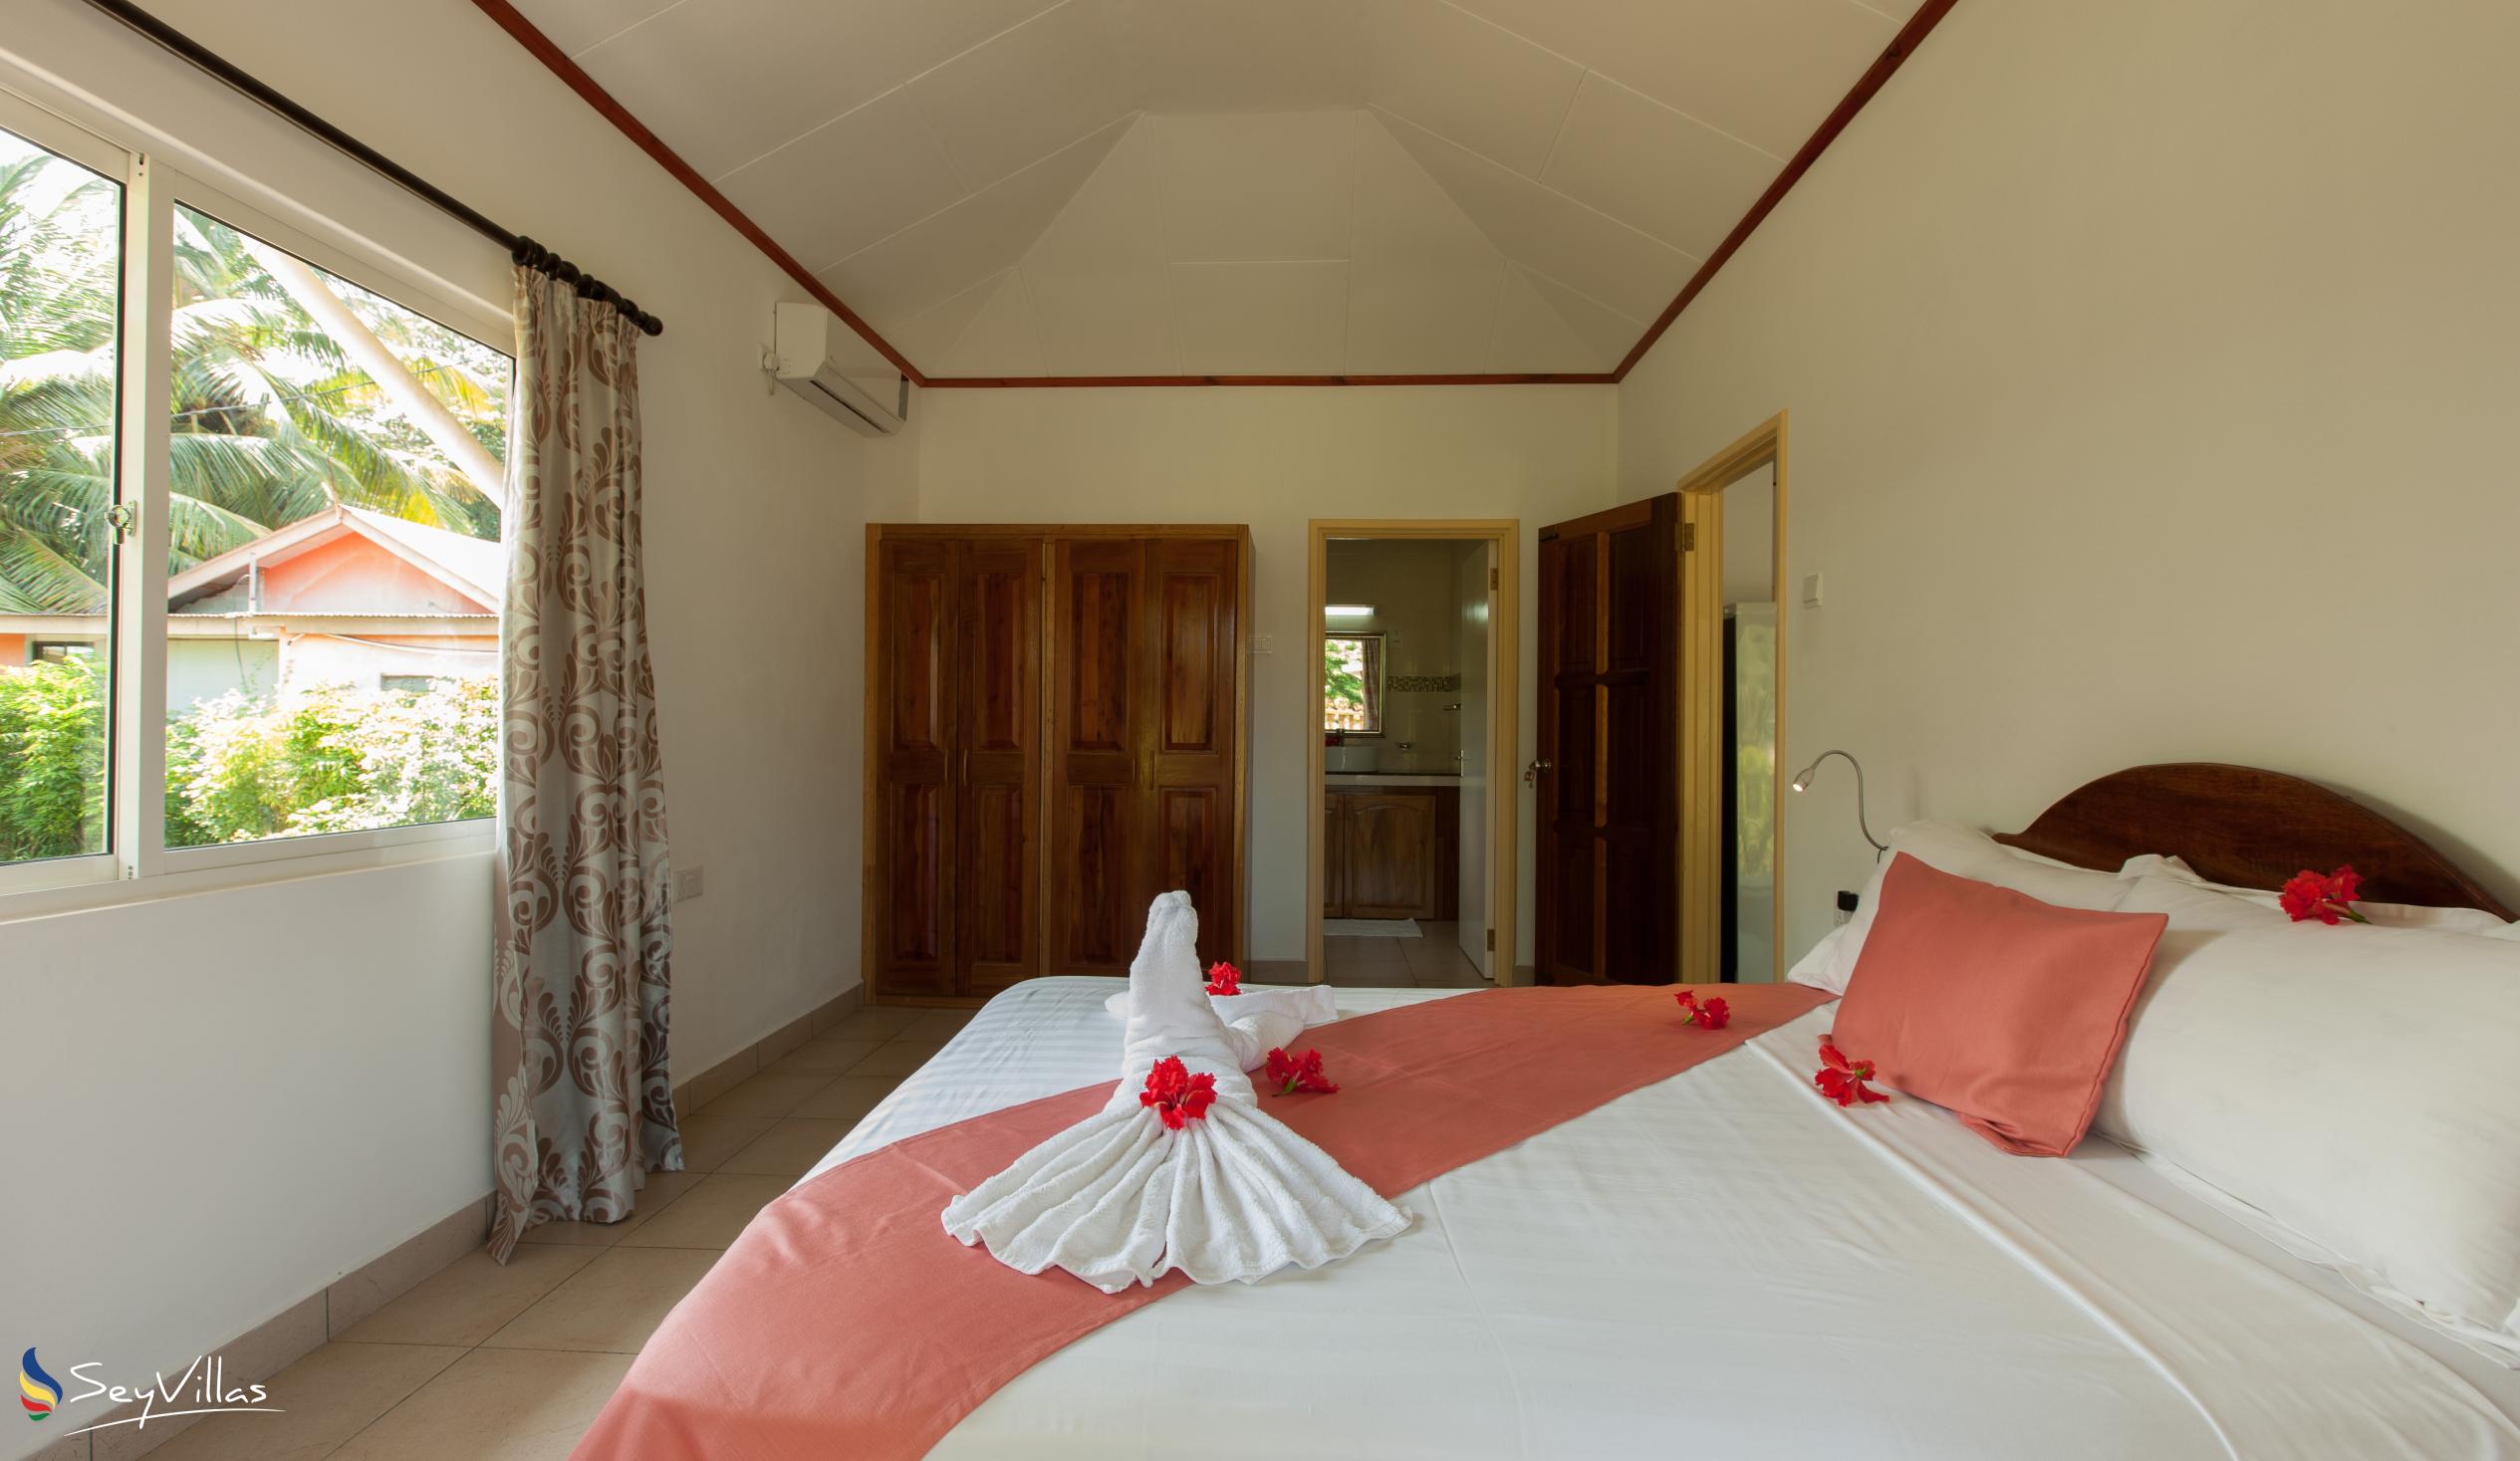 Photo 52: Hostellerie La Digue - 2-Bedroom Chalet - La Digue (Seychelles)